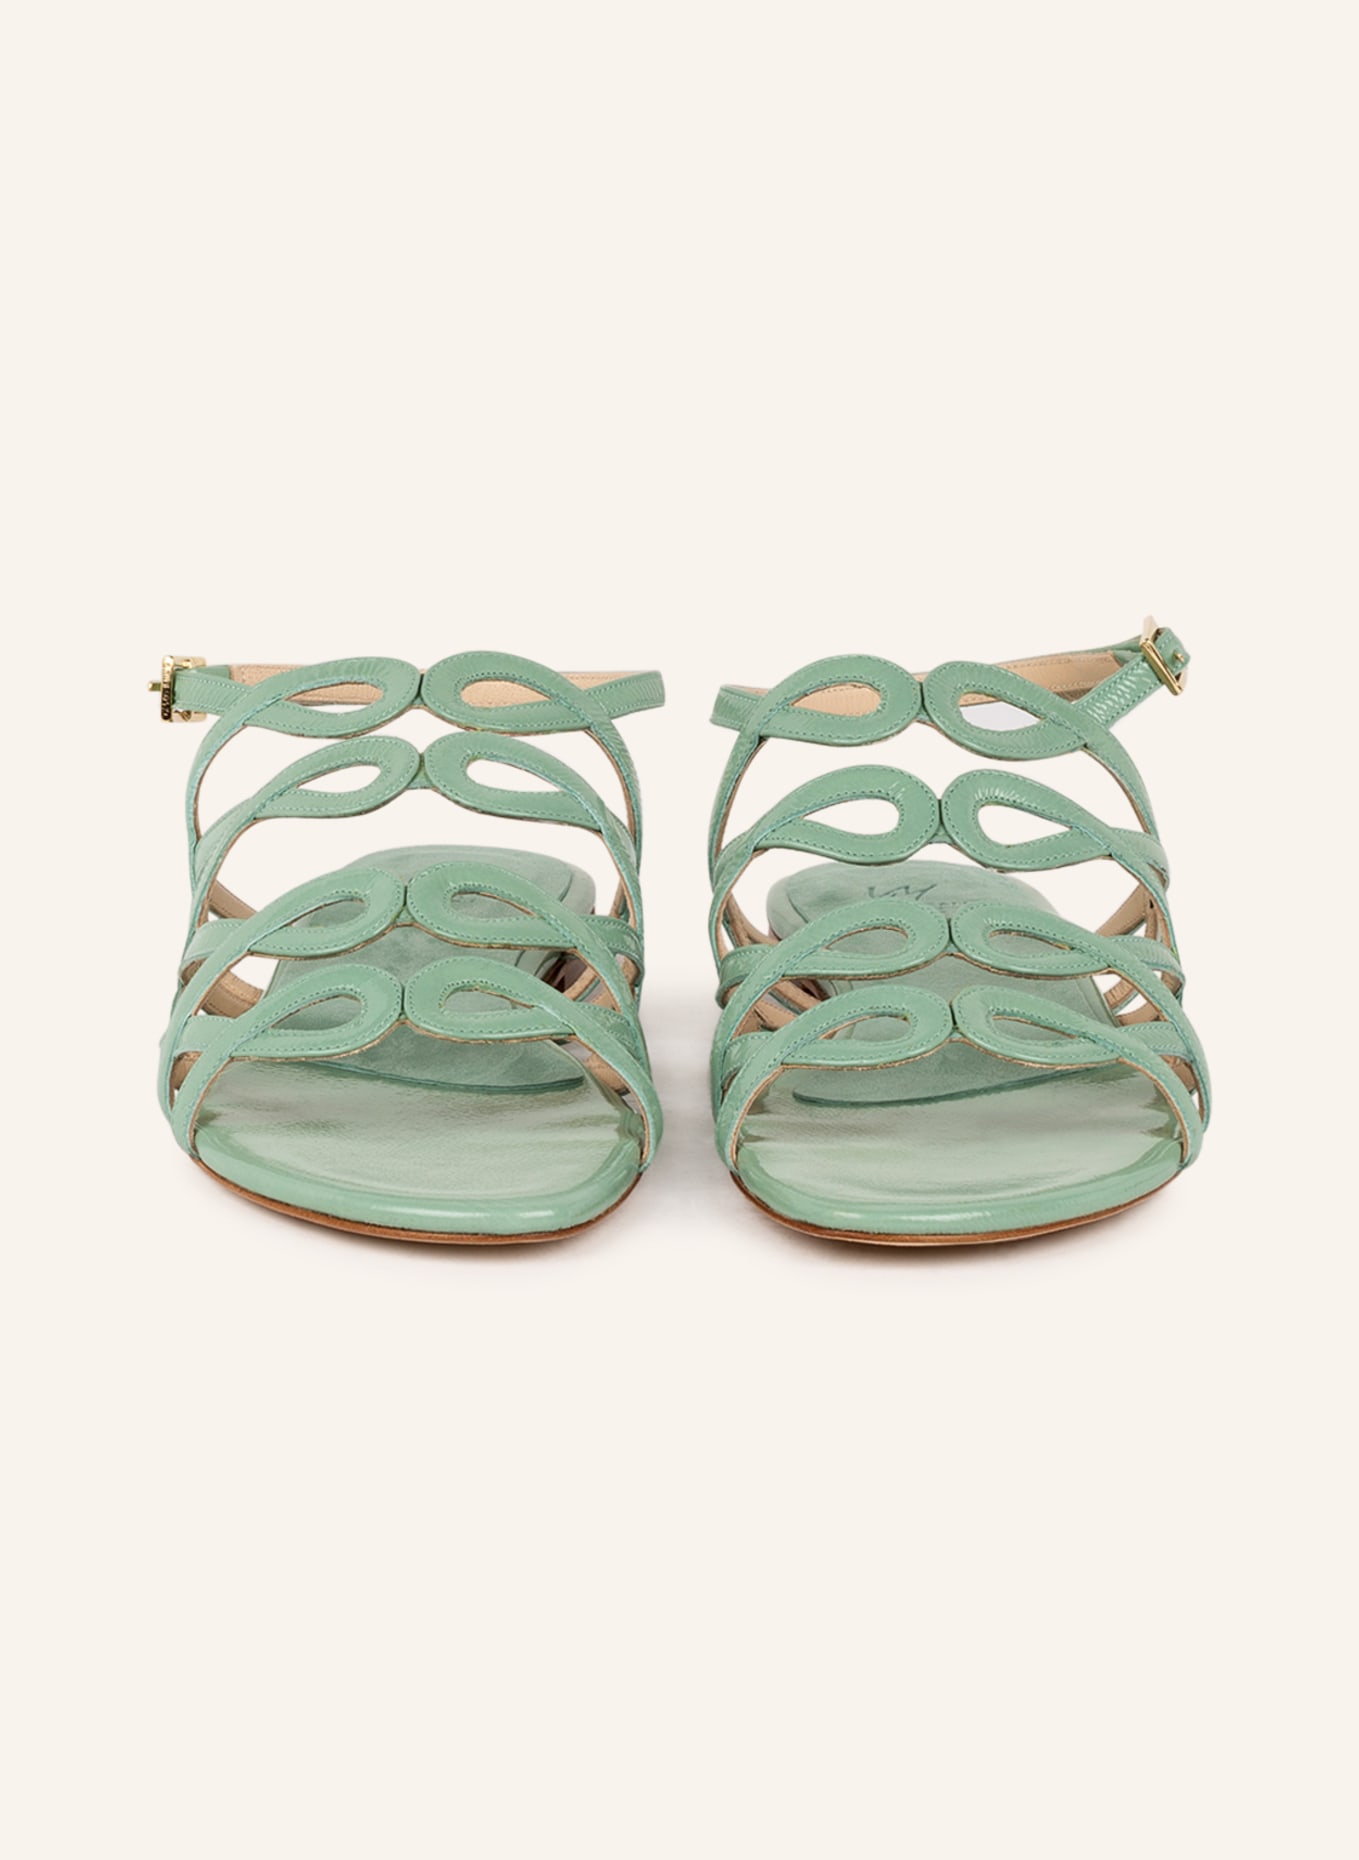 VIAMERCANTI Sandals SAND , Color: MINT (Image 3)